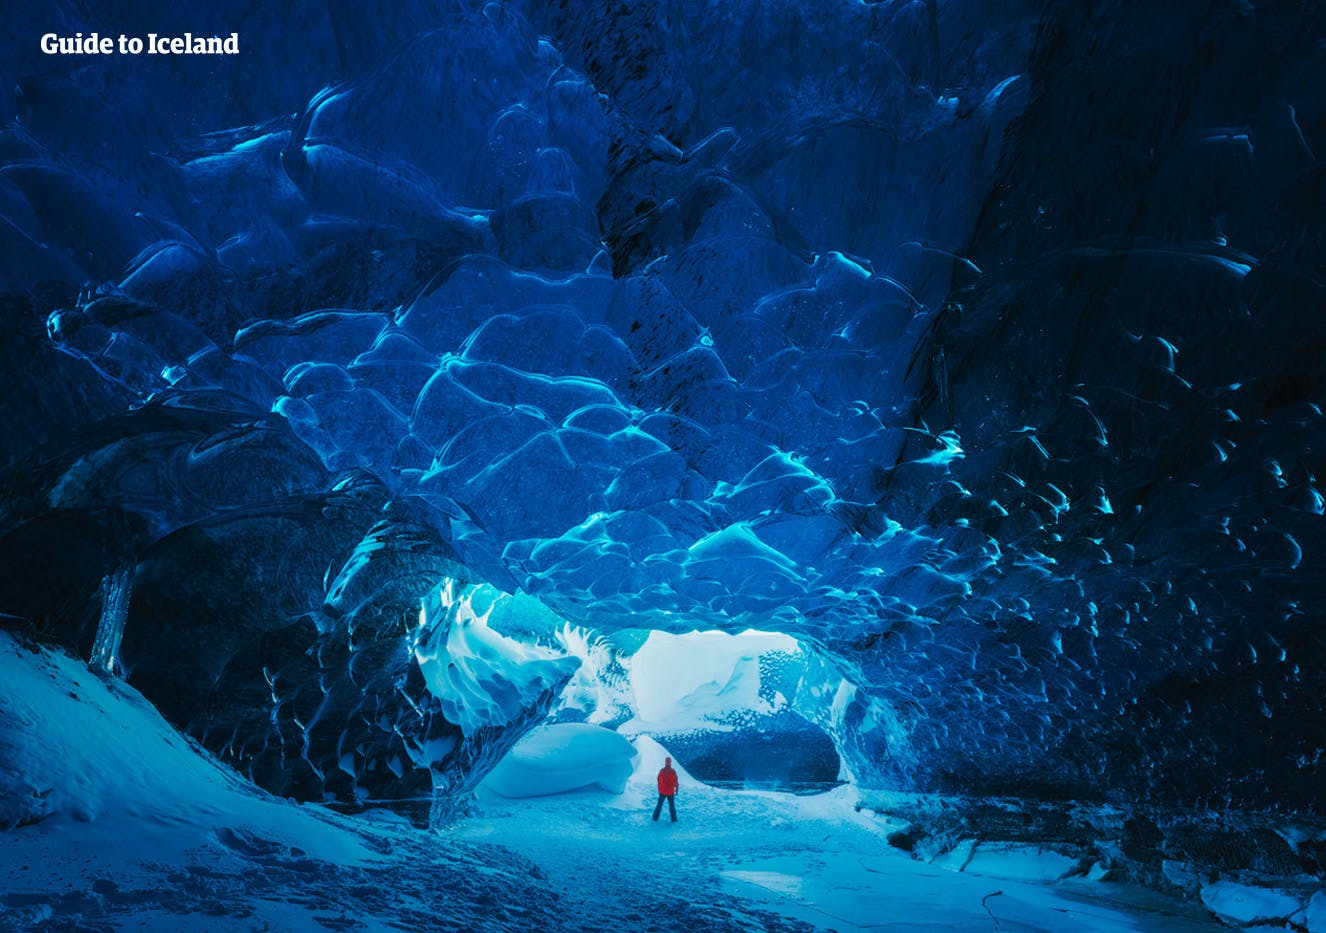 De oogverblindend fraaie blauwe binnenkant van de ijsgrotten van IJsland.